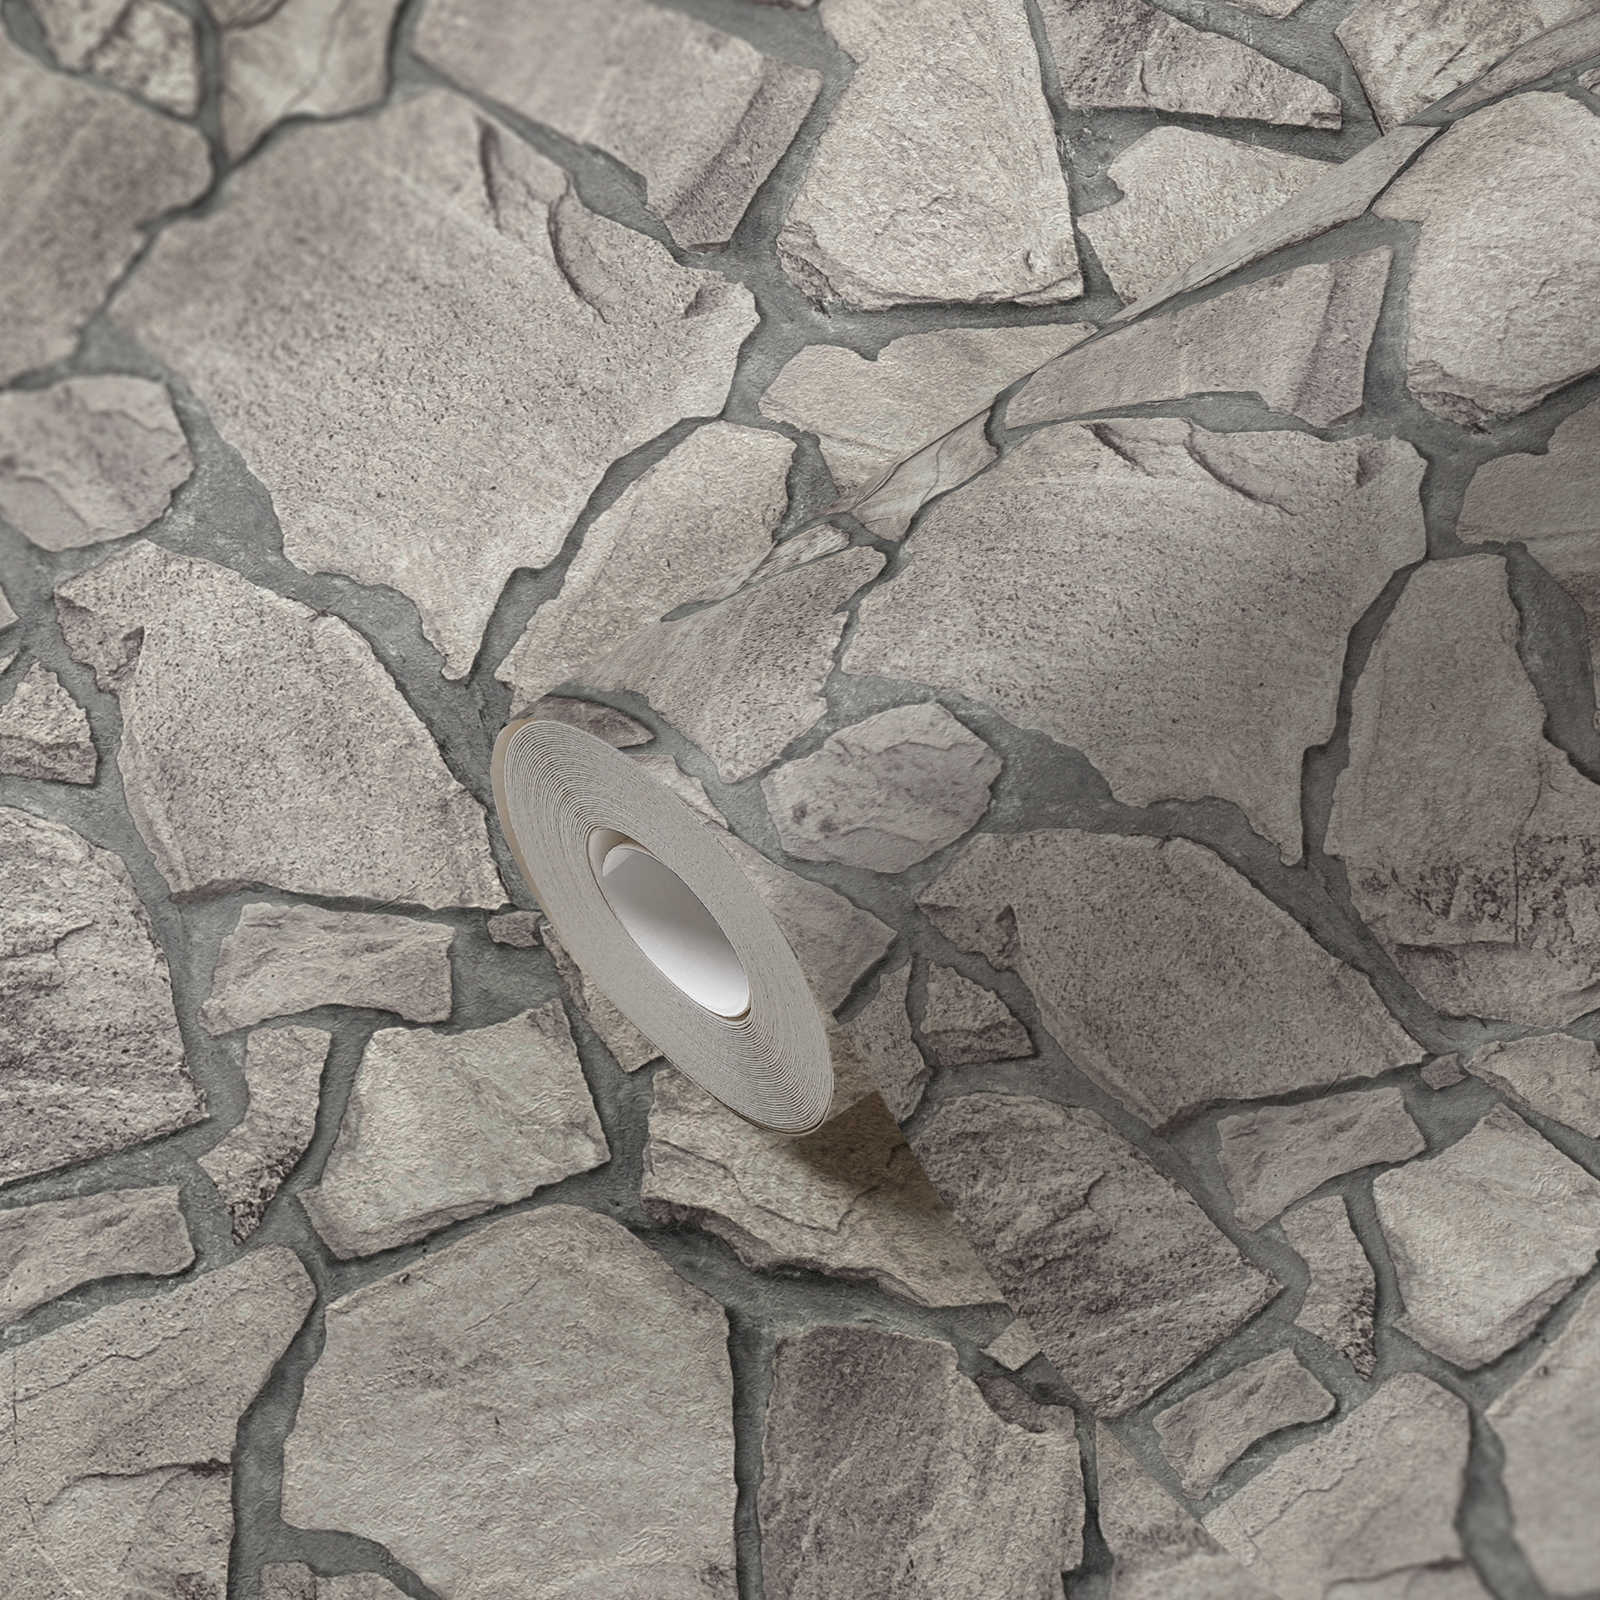             Natuursteen metselvliesbehang 3D-optiek - grijs, Grijs
        